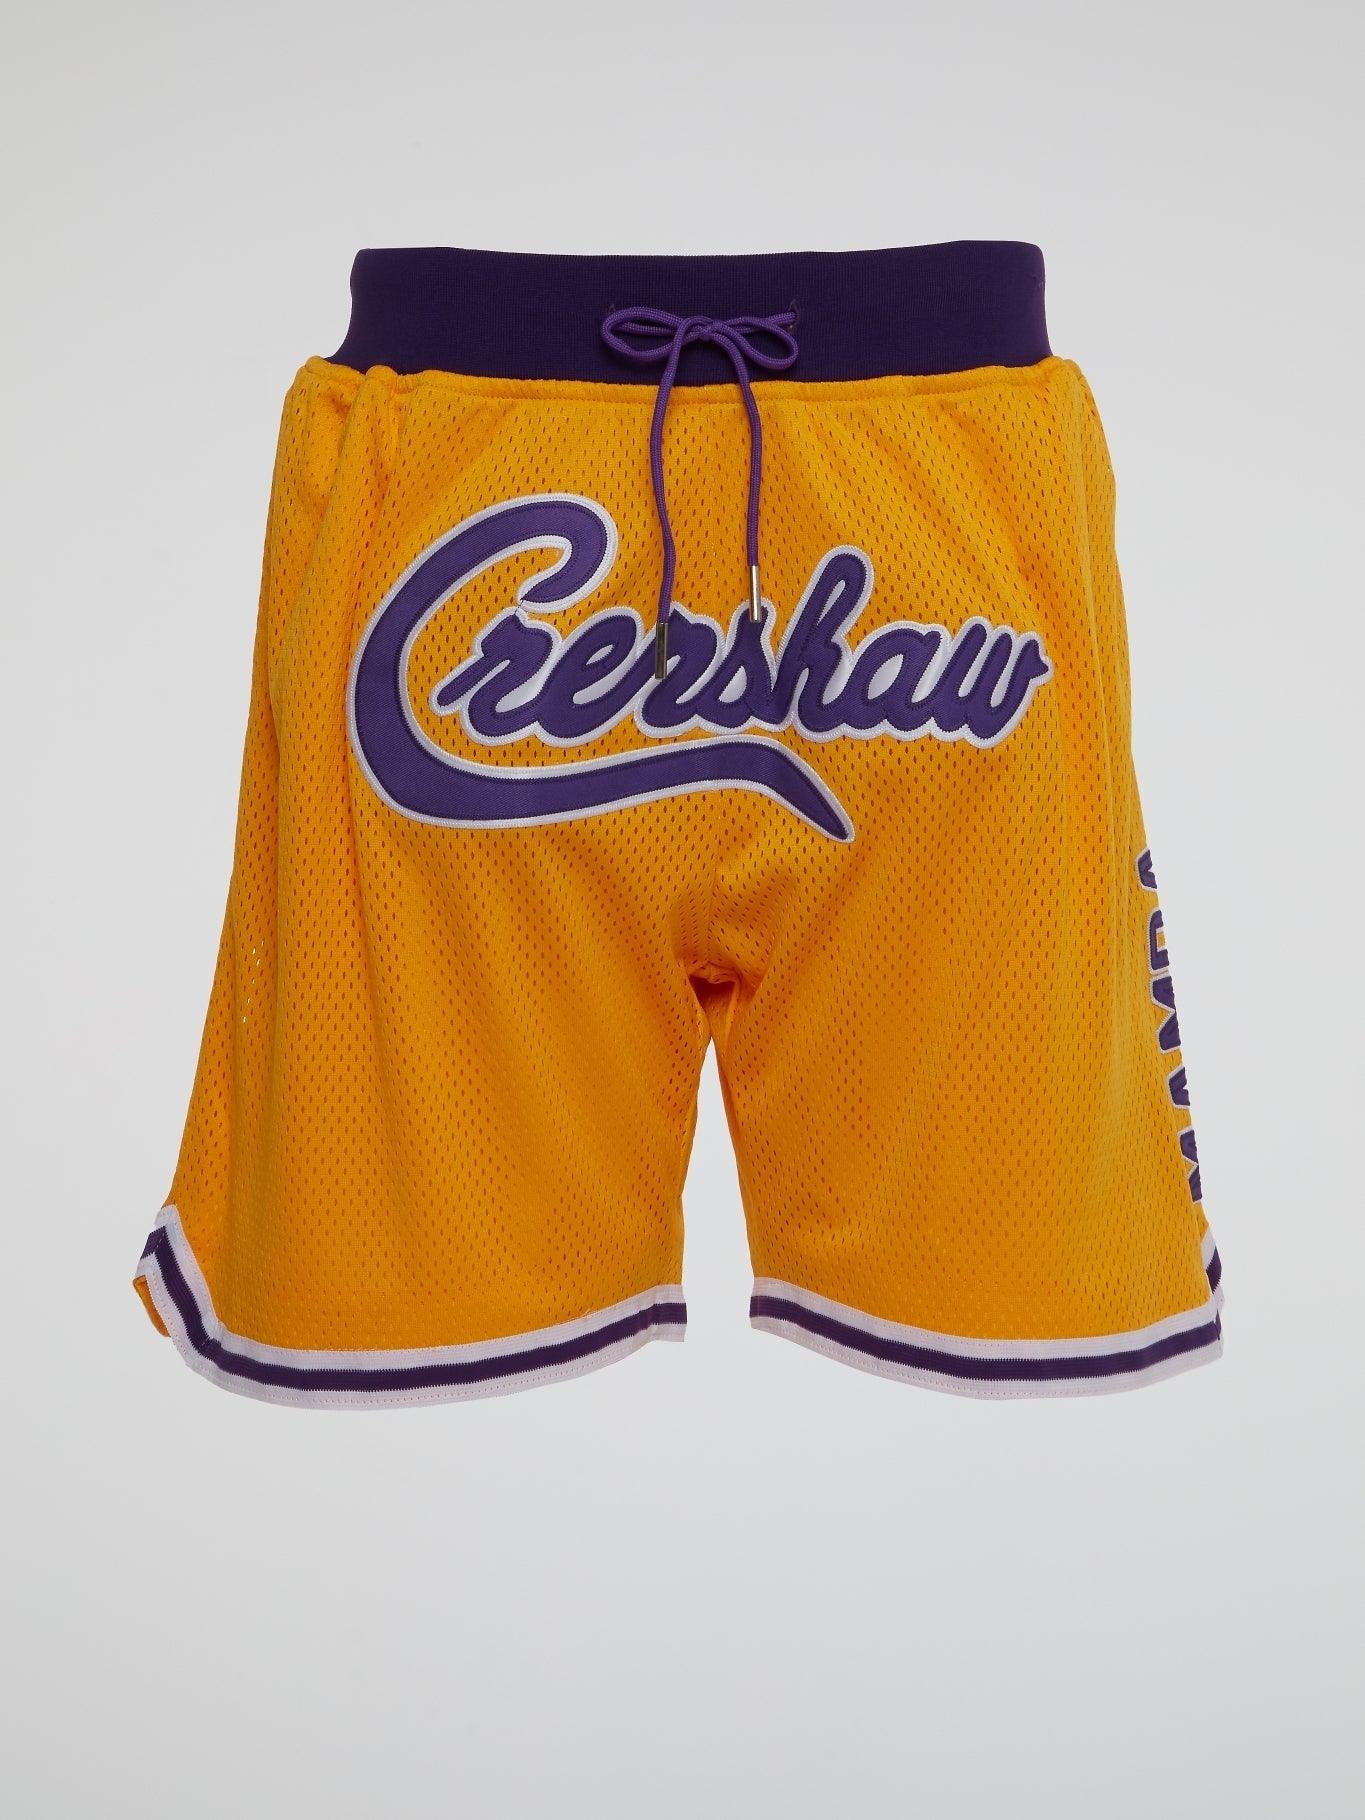 LA Kobe Bryant Crenshaw Shorts - B-Hype Society